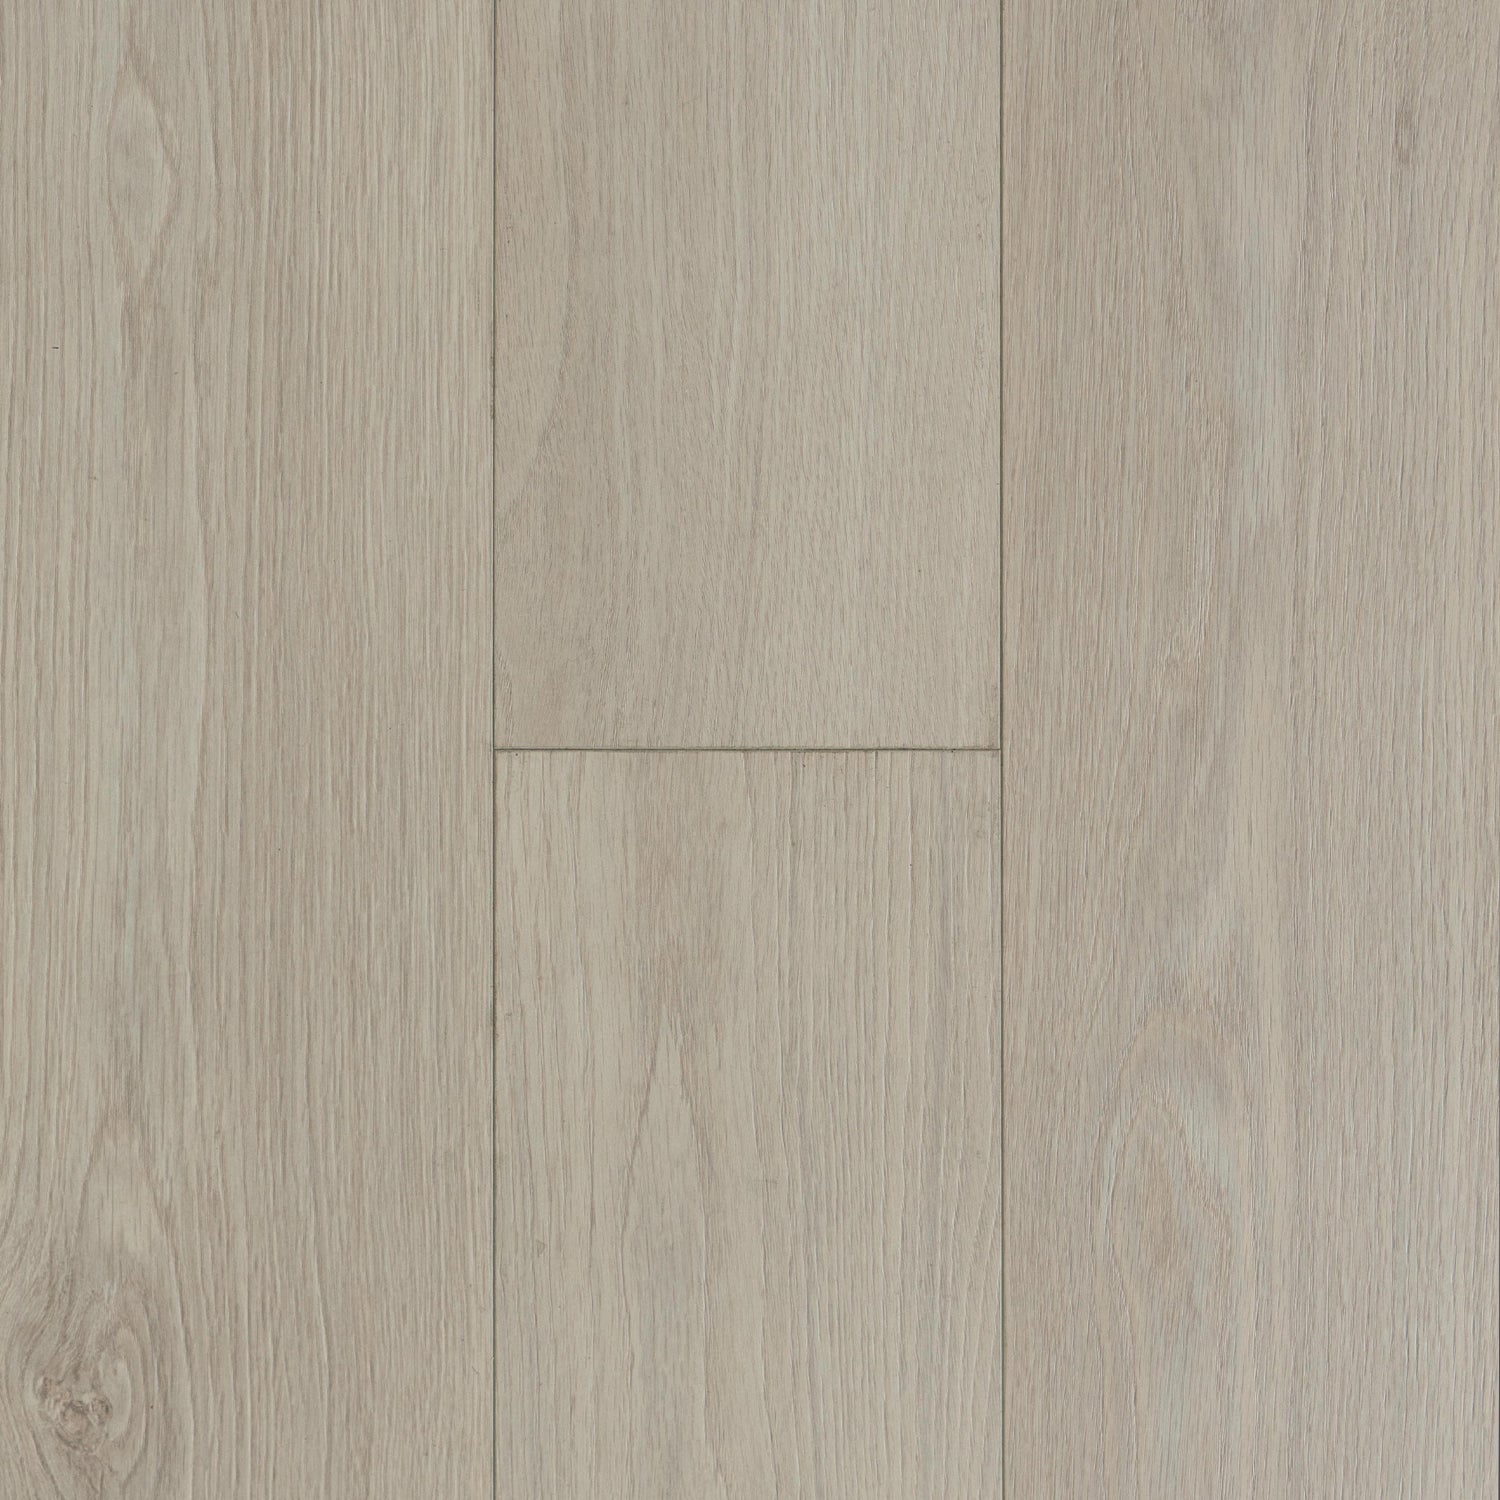 Shade Oak Laminate Flooring